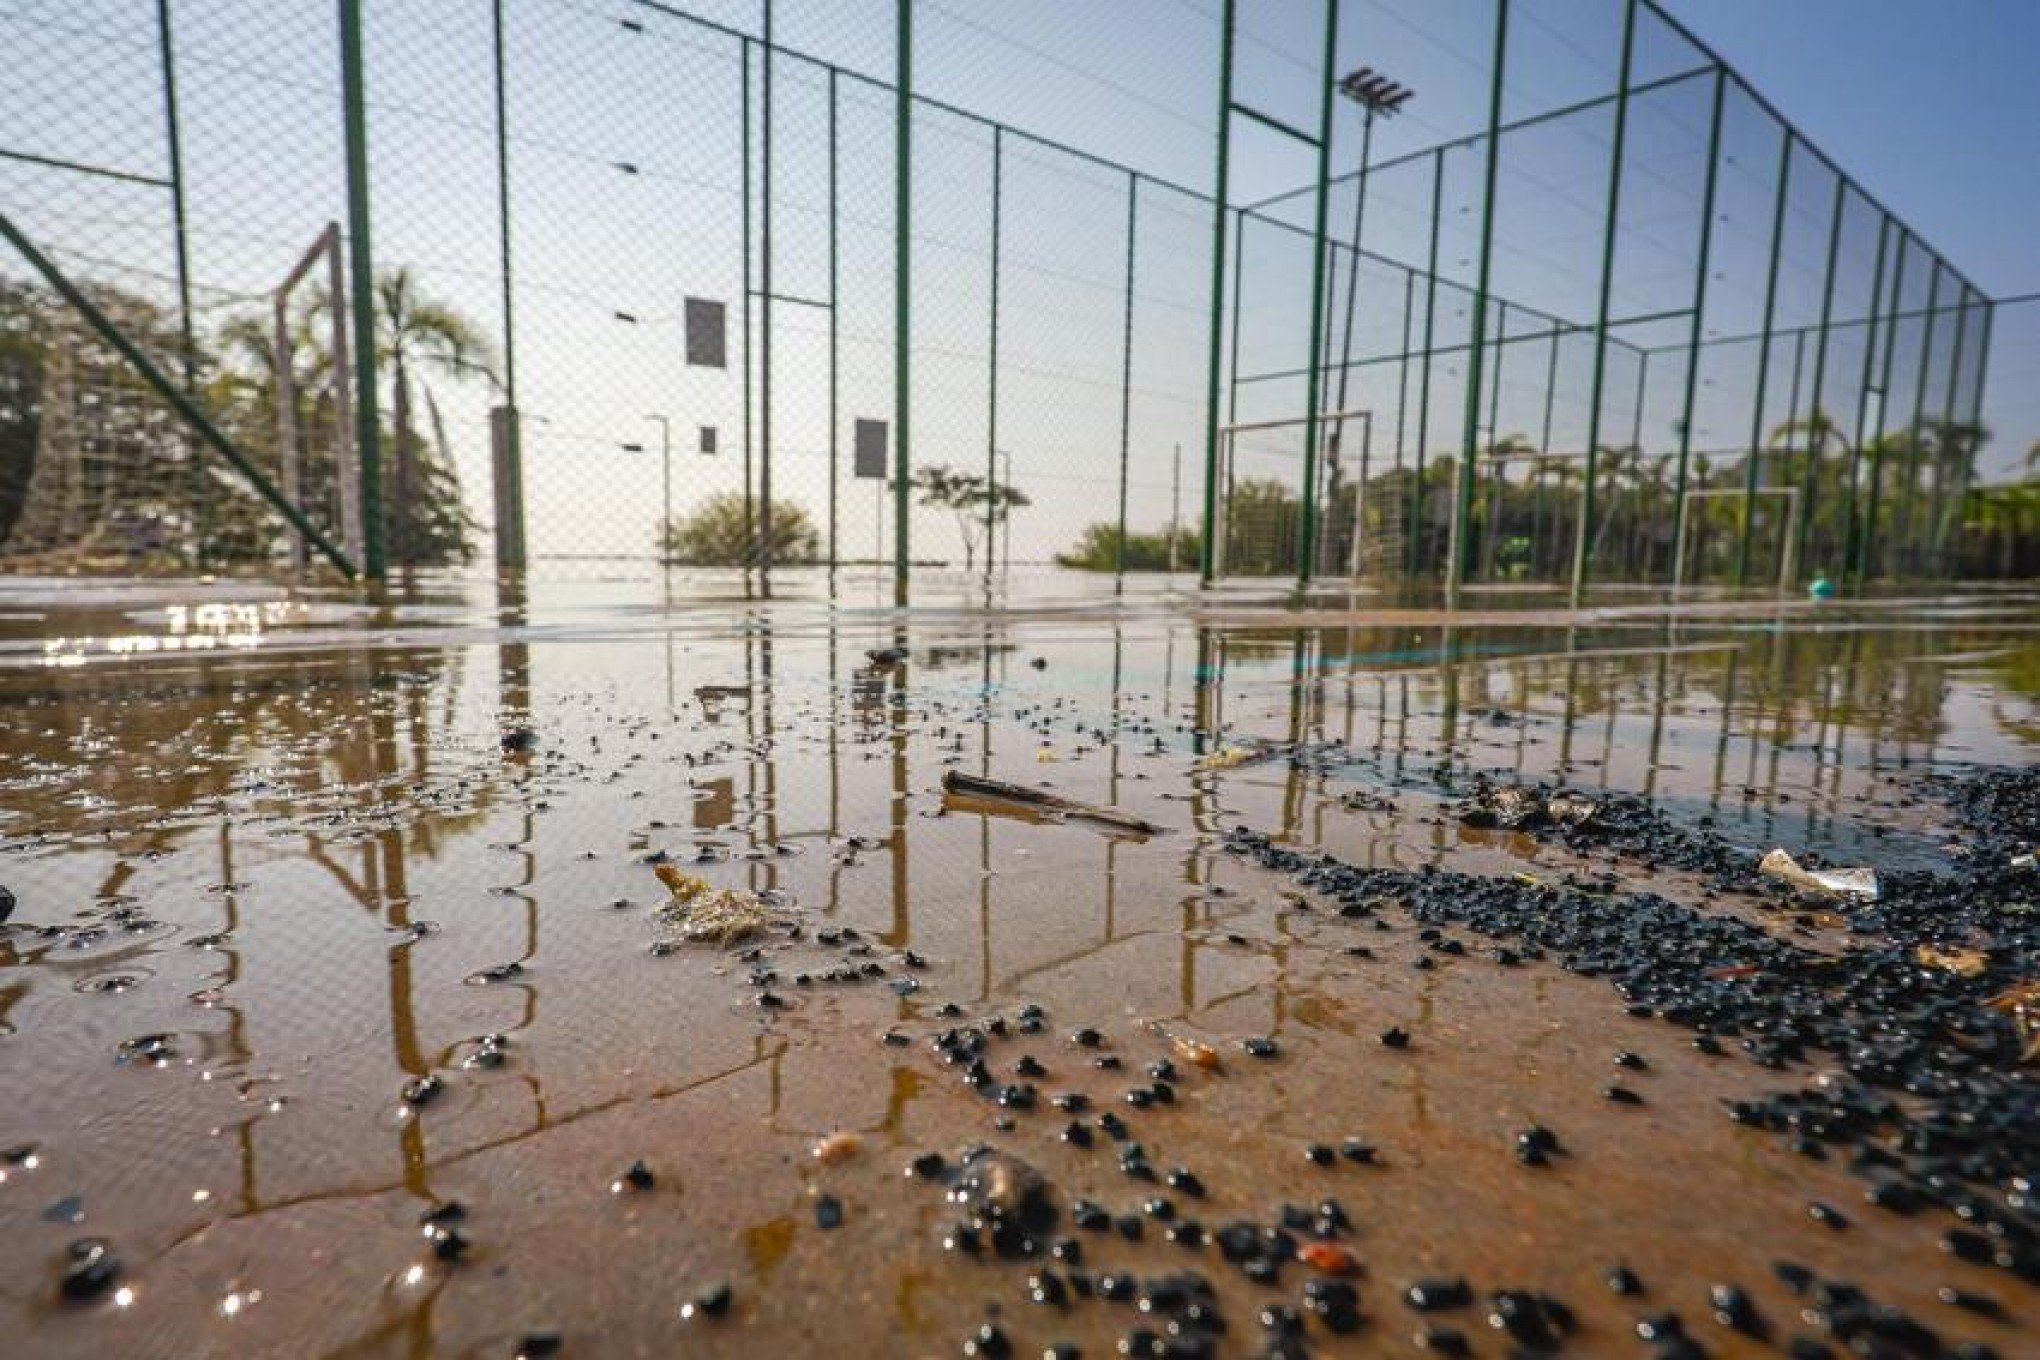 Vermes causam interdição de quadras esportivas na Orla do Guaíba; saiba quais são